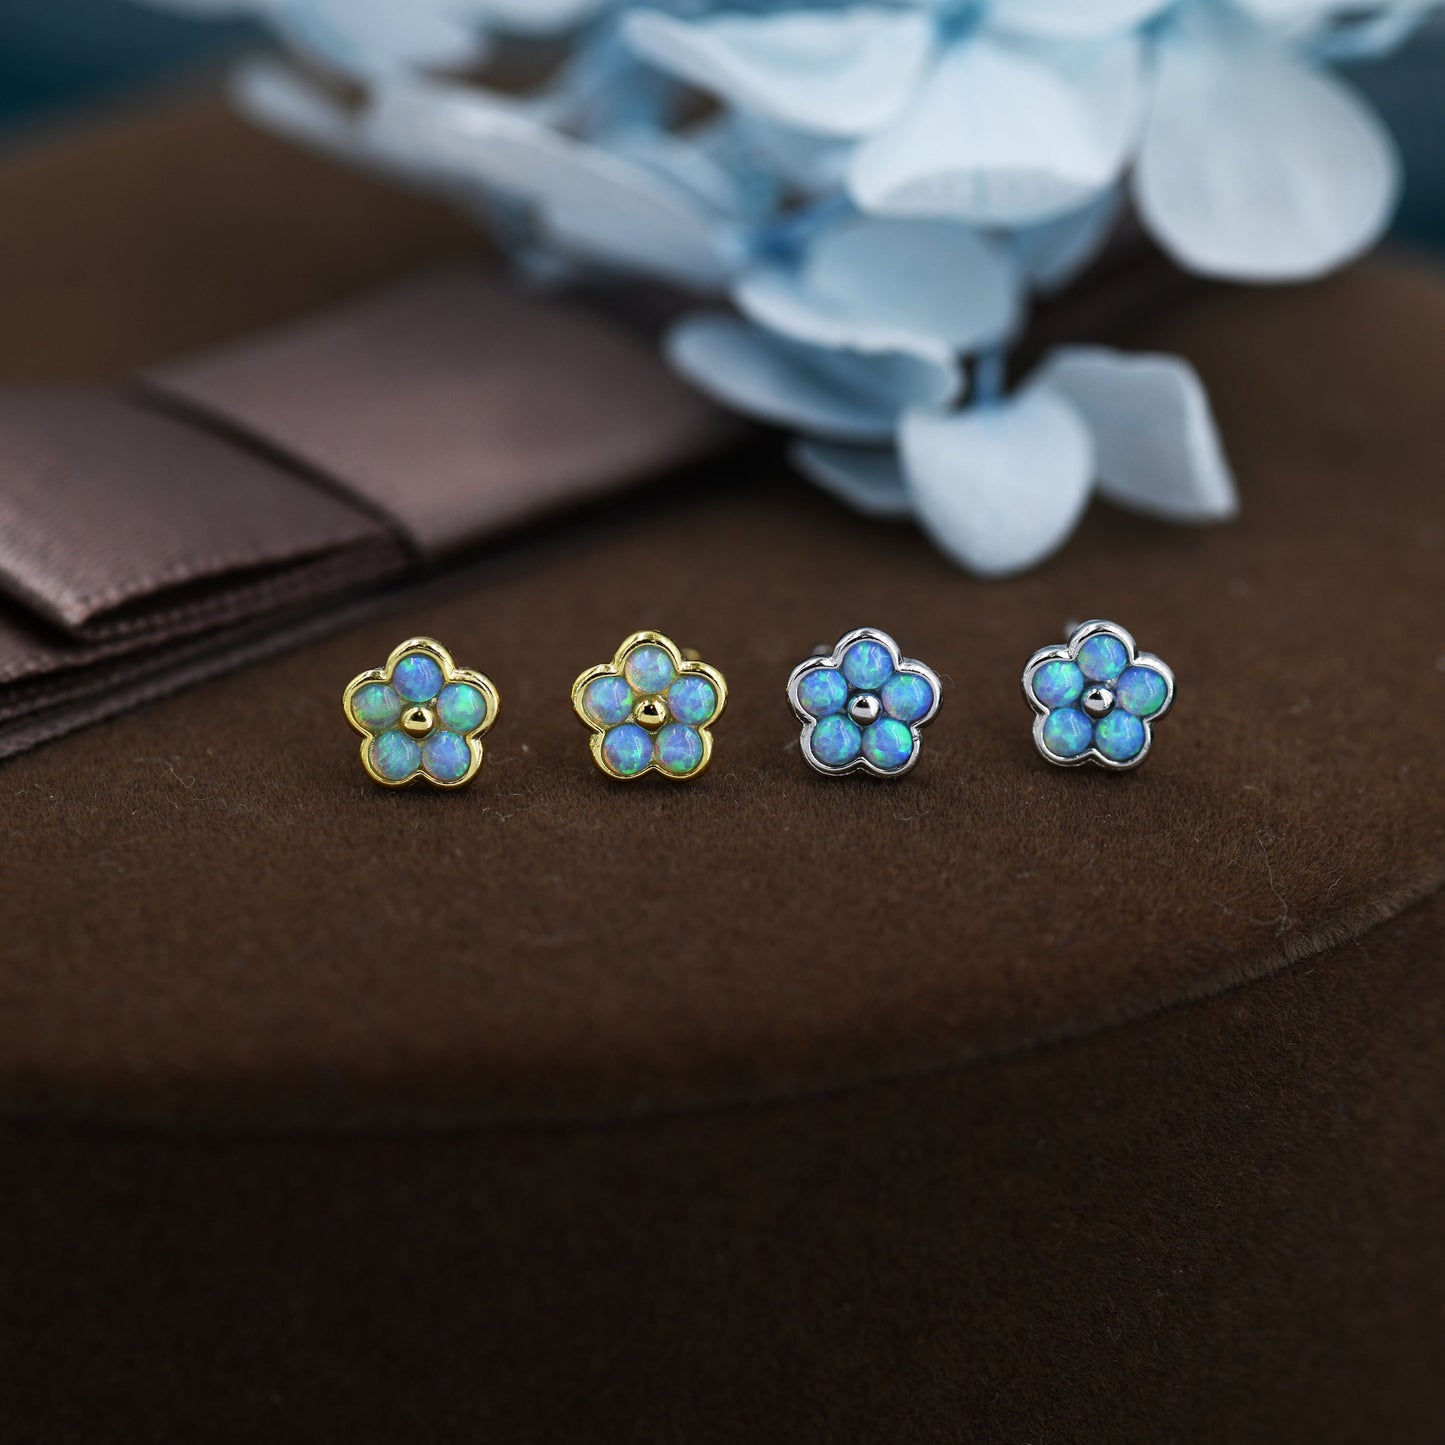 Blue Opal Flower Stud Earrings in Sterling Silver - Gold or Silver - Opal Forget-me-not - Opal Cluster - Petite Stud Earrings, Fire Opal